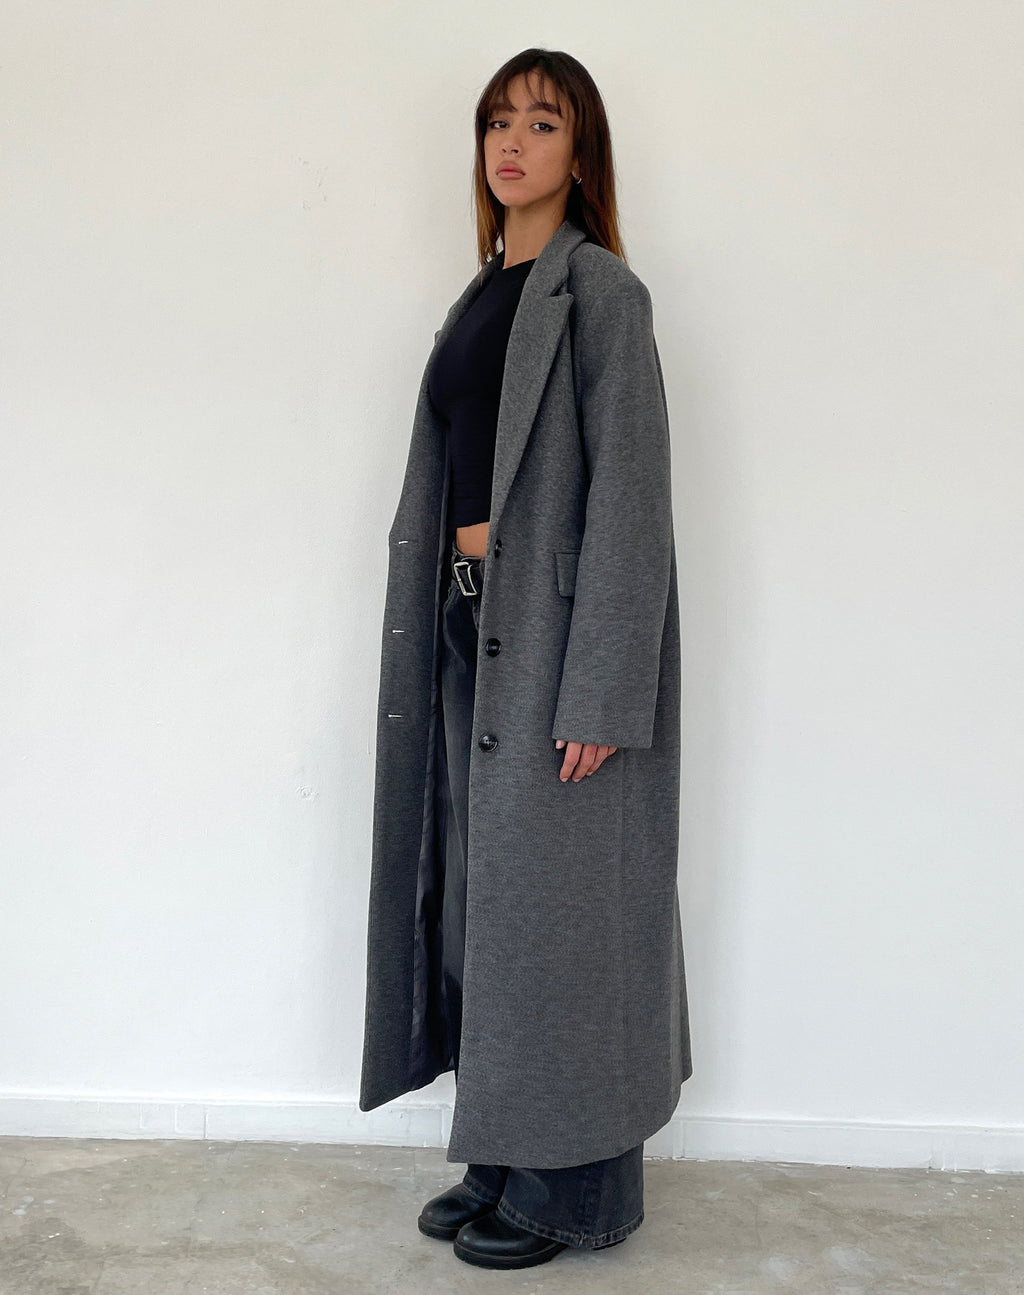 Malati Longline Wool Coat in Charcoal